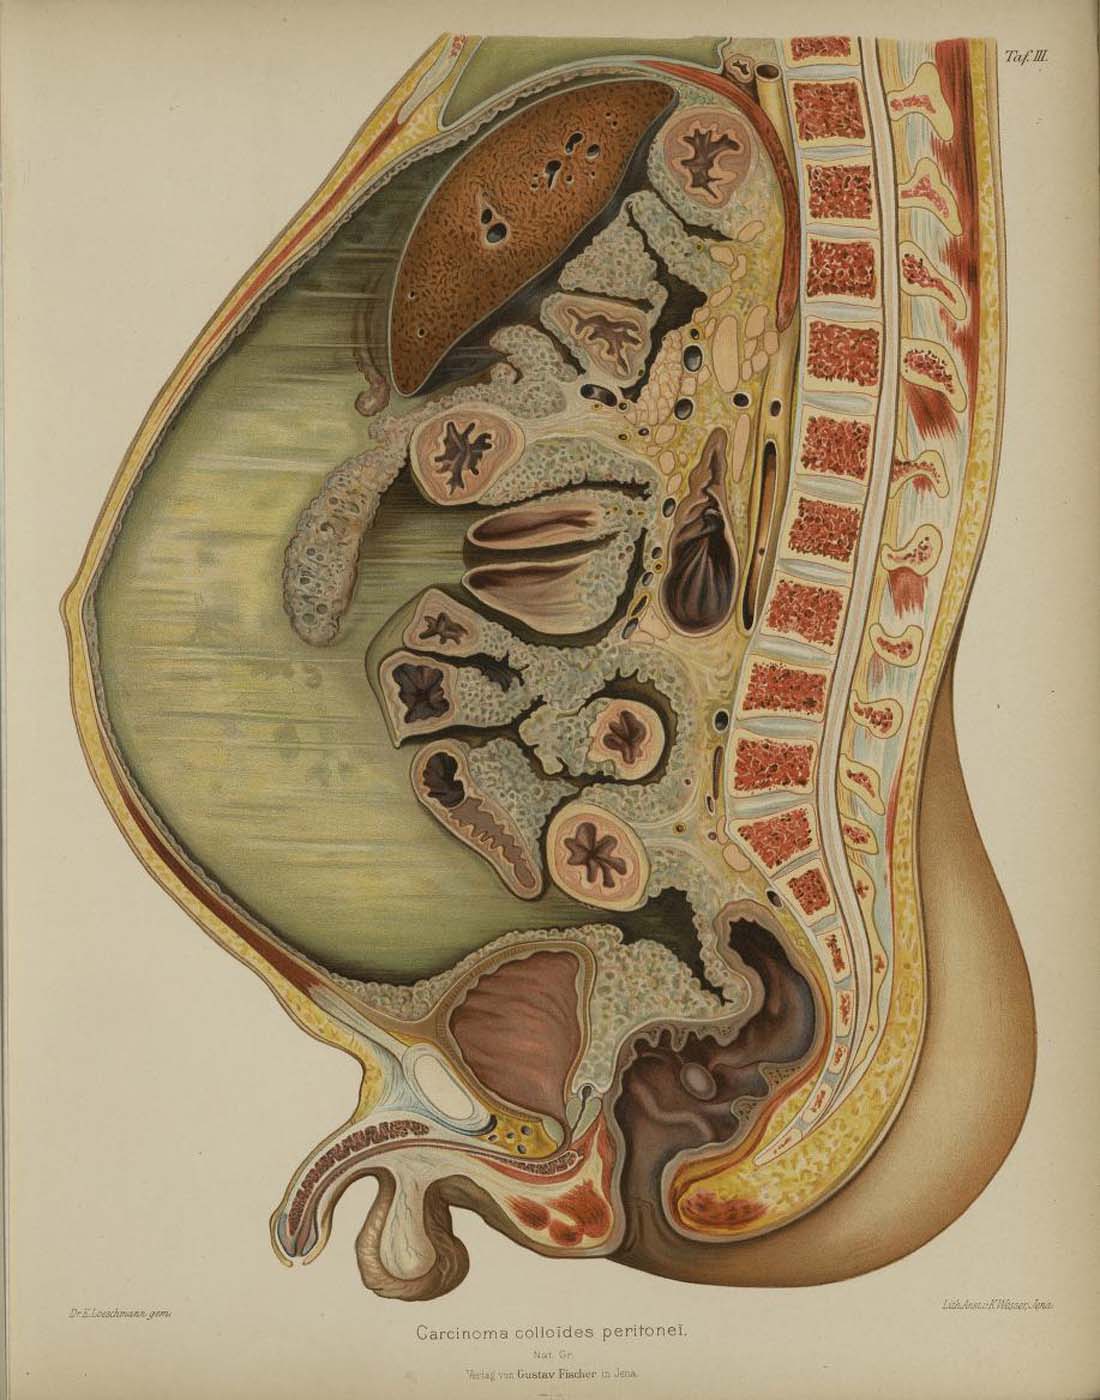 Carcinoma colloides peritonei Die farbige Abbildung zeigt einen vertikalen Querschnitt der Bauchhöhle mit ihren Organen und der Wirbelsäule. Sie füllt die gesamte Seite aus. Auf dem schmalen Rand rechts oben steht in lateinischen Buchstaben Taf. 3. Am unteren Rand ist zentriert in blasser gedruckter Schrift der Titel der Zeichnung lesbar. Die Darstellung beginnt am oberen Seitenrand unterhalb des Brustkorbs und endet unten mit dem Po und männlichen Geschlechtsorganen. Rechts ist sie durch die Wirbelsäule begrenzt, links durch den stark vorgewölbten Bauch. Umgeben wird die Abbildung von einen beige-gelblichen Rand. Die Wirbelsäule schwingt im Lendenbereich etwas nach links. Die einzelnen Wirbel sind in einem hellem Gelb dargestellt, rote Pünktchen dicht nebeneinander markieren ihr Inneres. In Hellblau erscheinen die Räume dazwischen. Nach links folgt die Abbildung der Bauchhöhle mit ihren Organen. Sie sind mehrheitlich in einem blassen Rot gezeichnet. Blassgelbe Umrandungen konturieren sie nach außen. Alle Organe sind dazu mehr oder weniger von grauer Farbe umgeben. Sie erscheint wie ein Belag, dessen Struktur an Kaviar erinnert. Im oberen Drittel sticht eine ovale braune Fläche hervor, auf der unterschiedlich große dunkle Punkte erscheinen. Darunter, nah an der Wirbelsäule befindet sich eine längliche, vertikal verlaufende Farbfläche in Gelb, deren Enden sich verjüngen. Darin ist ein dunkelbraunes Oval abgebildet. Der Raum hinter der Wölbung der Bauchdecke links ist mit blasser grün-grauer Farbe ausgemalt. Diese Abbildung stammt aus dem Topographischen Atlas der Medizinisch-Chirurgischen Diagnostik, der vom Pathologen Emil Ponfick zwischen 1900 und 1905 zusammengestellt wurde. Unterstützt wurde er dabei von Dr. Emil Löschmann, einem Maler und Grafiker aus Breslau. — — Carcinoma colloides peritonei The coloured illustration shows a vertical cross-section of the abdominal cavity with its organs and spine. It fills the entire page. On the narrow margin in the upper right corner, “Taf. 3” is written in Latin letters. The title of the drawing can be read at the lower margin, centred in a pale printed script. The illustration begins at the top of the page below the ribcage and ends at the bottom with the buttocks and male sexual organs. On the right, it is limited by the spine, and on the left by the strongly bulging abdomen. The figure is surrounded by a beige-yellowish border. The spine swings slightly to the left in the lumbar region. The individual vertebrae are depicted in light yellow, red dots close together mark their interior. The spaces between them appear in light blue. To the left follows the illustration of the abdominal cavity with its organs. The majority of them are drawn in pale red. Pale yellow borders outline them on the outside. All organs are more or less surrounded by a grey colour. It appears like a coating whose structure is reminiscent of caviar. In the upper third, an oval brown area stands out, on which dark dots of different sizes appear. Below it, close to the spine, is an elongated vertically running coloured area in yellow, the ends of which taper off. A dark brown oval is depicted within it. The space behind the bulge of the abdominal wall on the left is painted in a paler green-grey colour. This illustration is from the "Topographical Atlas of Medico-Surgical Diagnostics," compiled by the pathologist Emil Ponfick between 1900 and 1905. He was assisted by Dr. Emil Löschmann, a painter and graphic artist from Breslau.